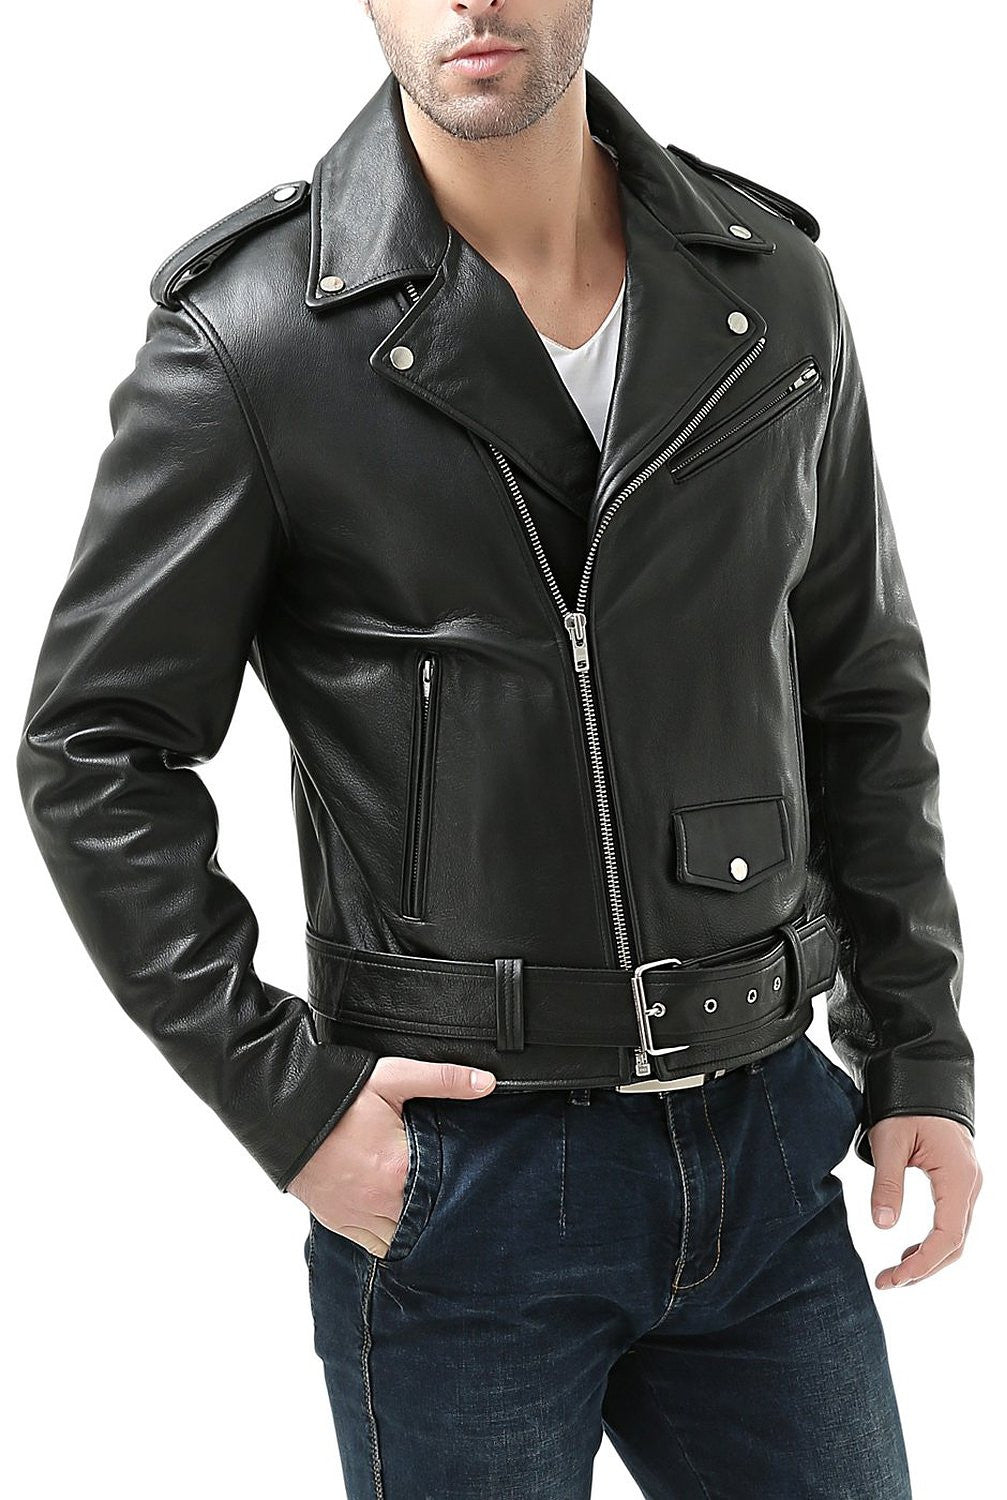 Vintage Biker Jacket, 90s Black Leather Motorcycle Jacket, Bike Jacket  Men's Leather Motorbike Jacket 80s Ladies Leather Biker Jacket Size L -  Etsy | Womens leather biker jacket, Black leather motorcycle jacket,